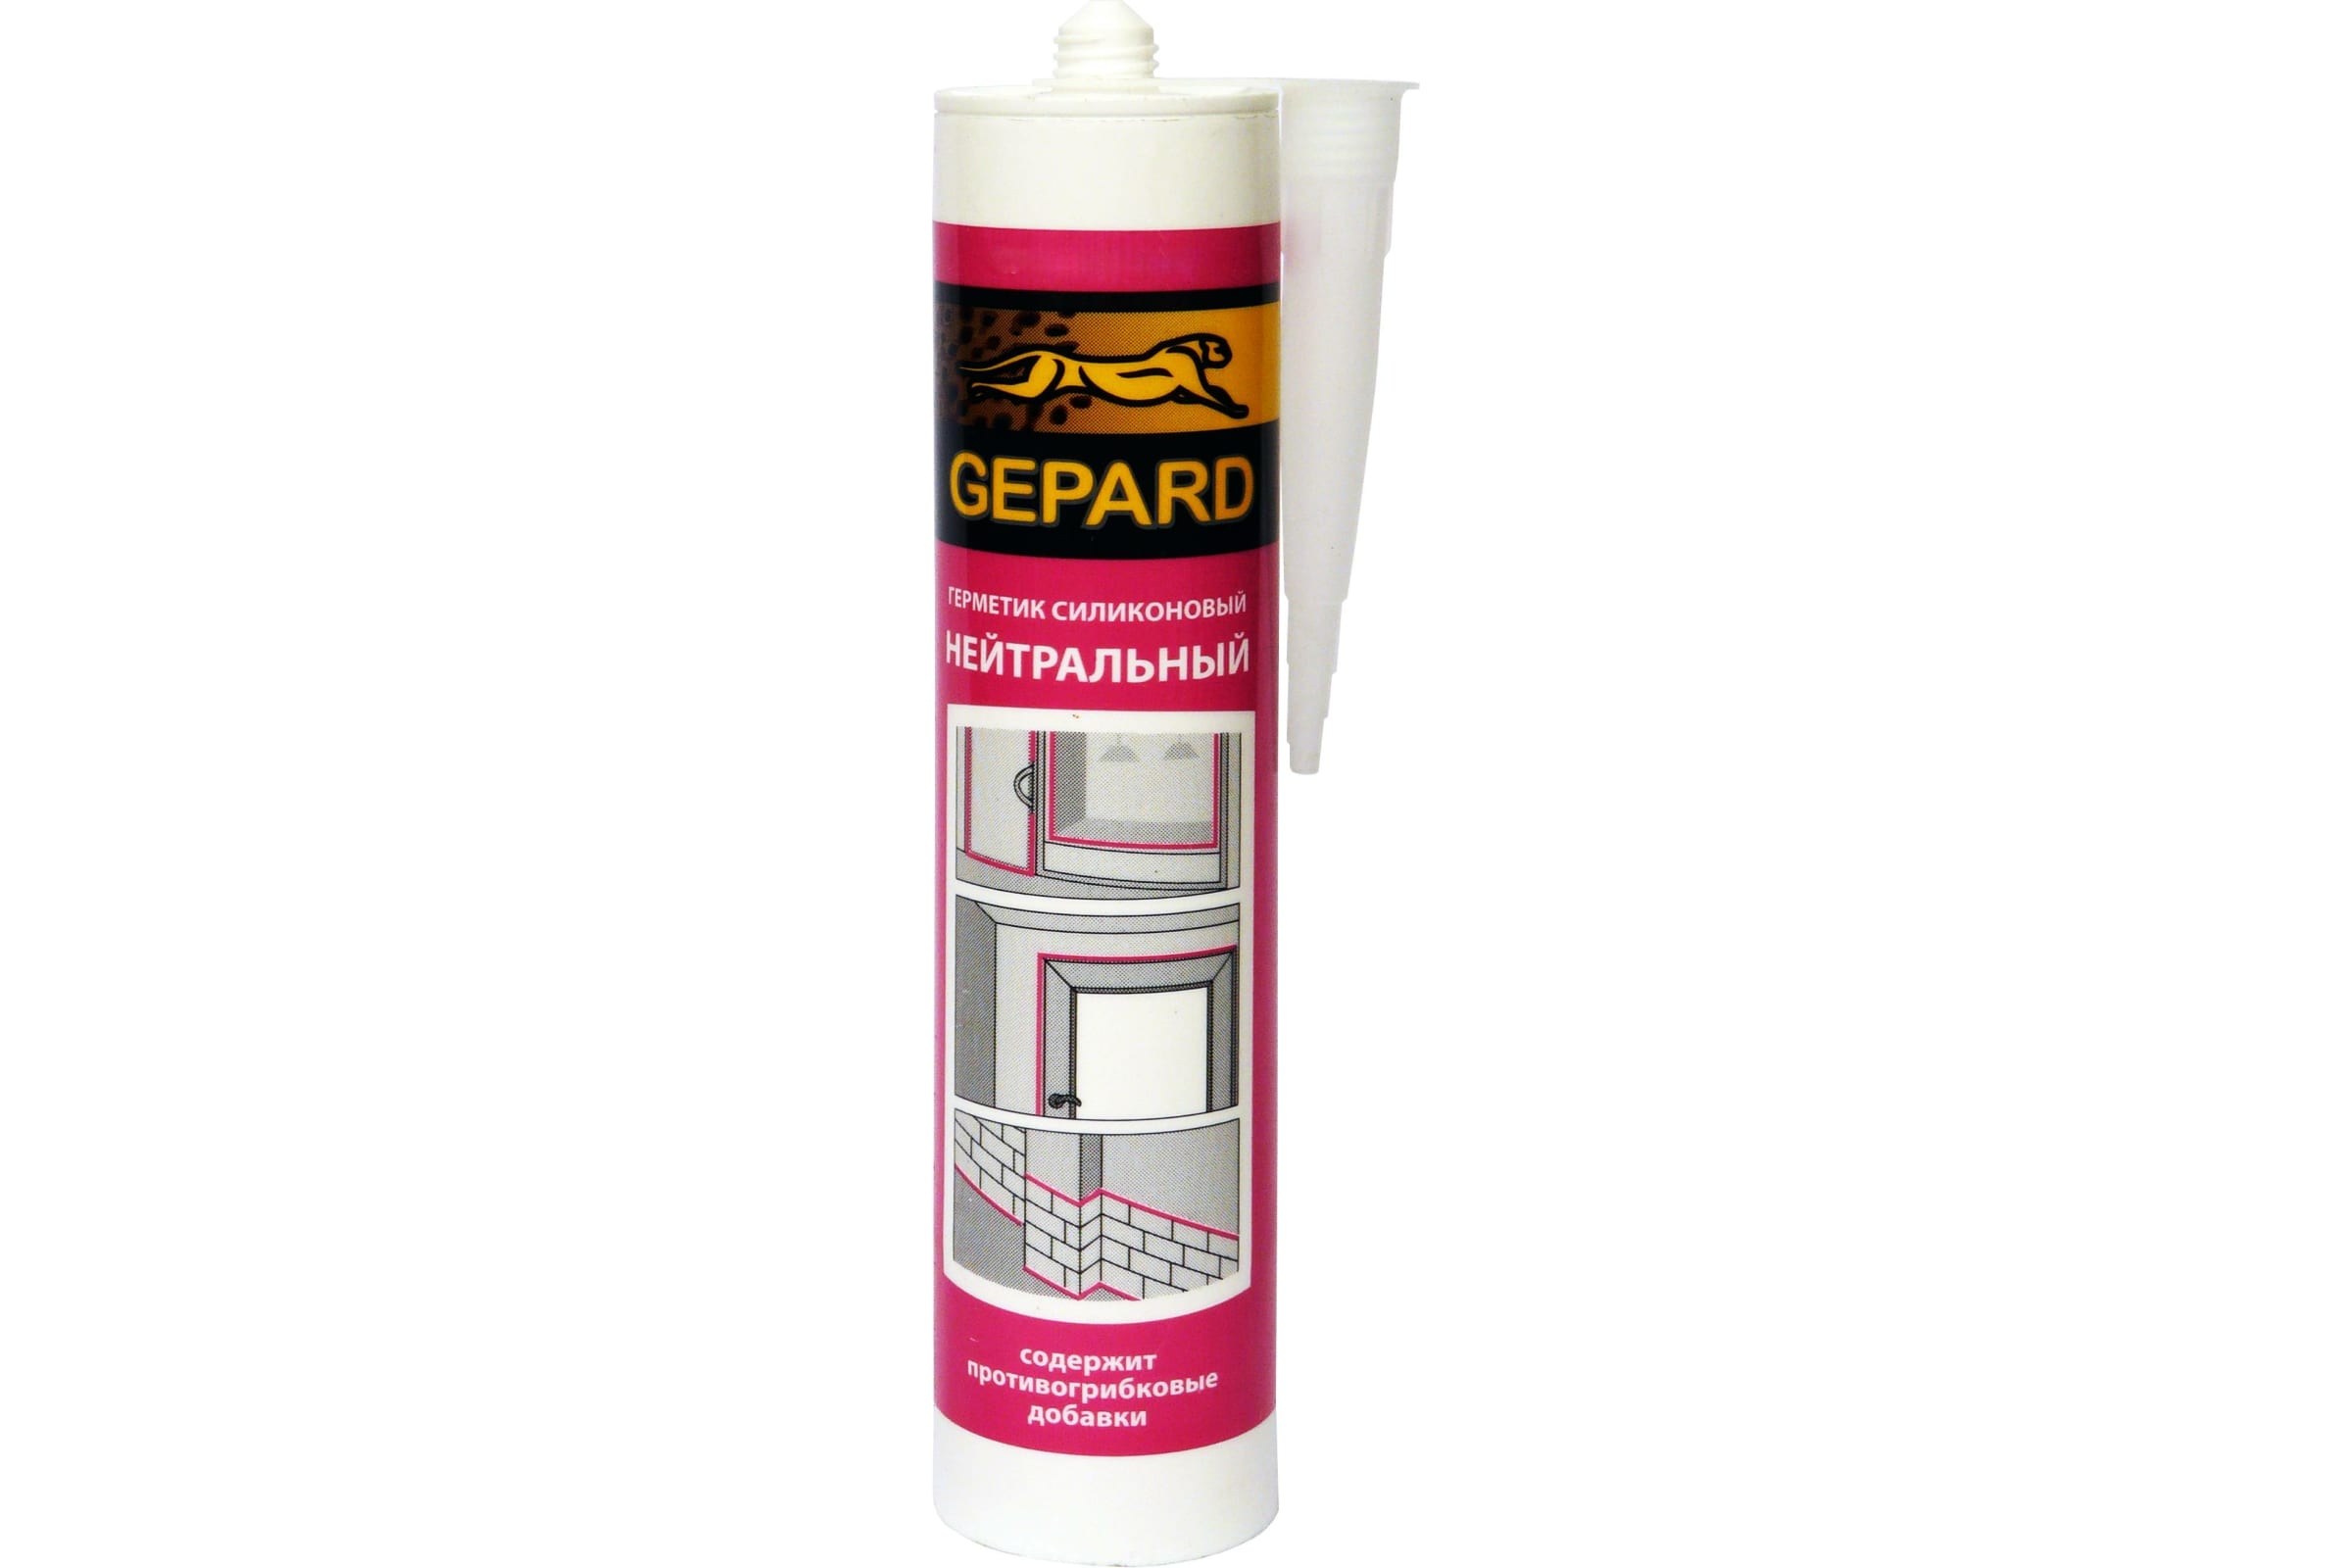 Gepard Герметик силиконовый нейтральный CSS 764 коричневый 280 мл. 0С-00010143